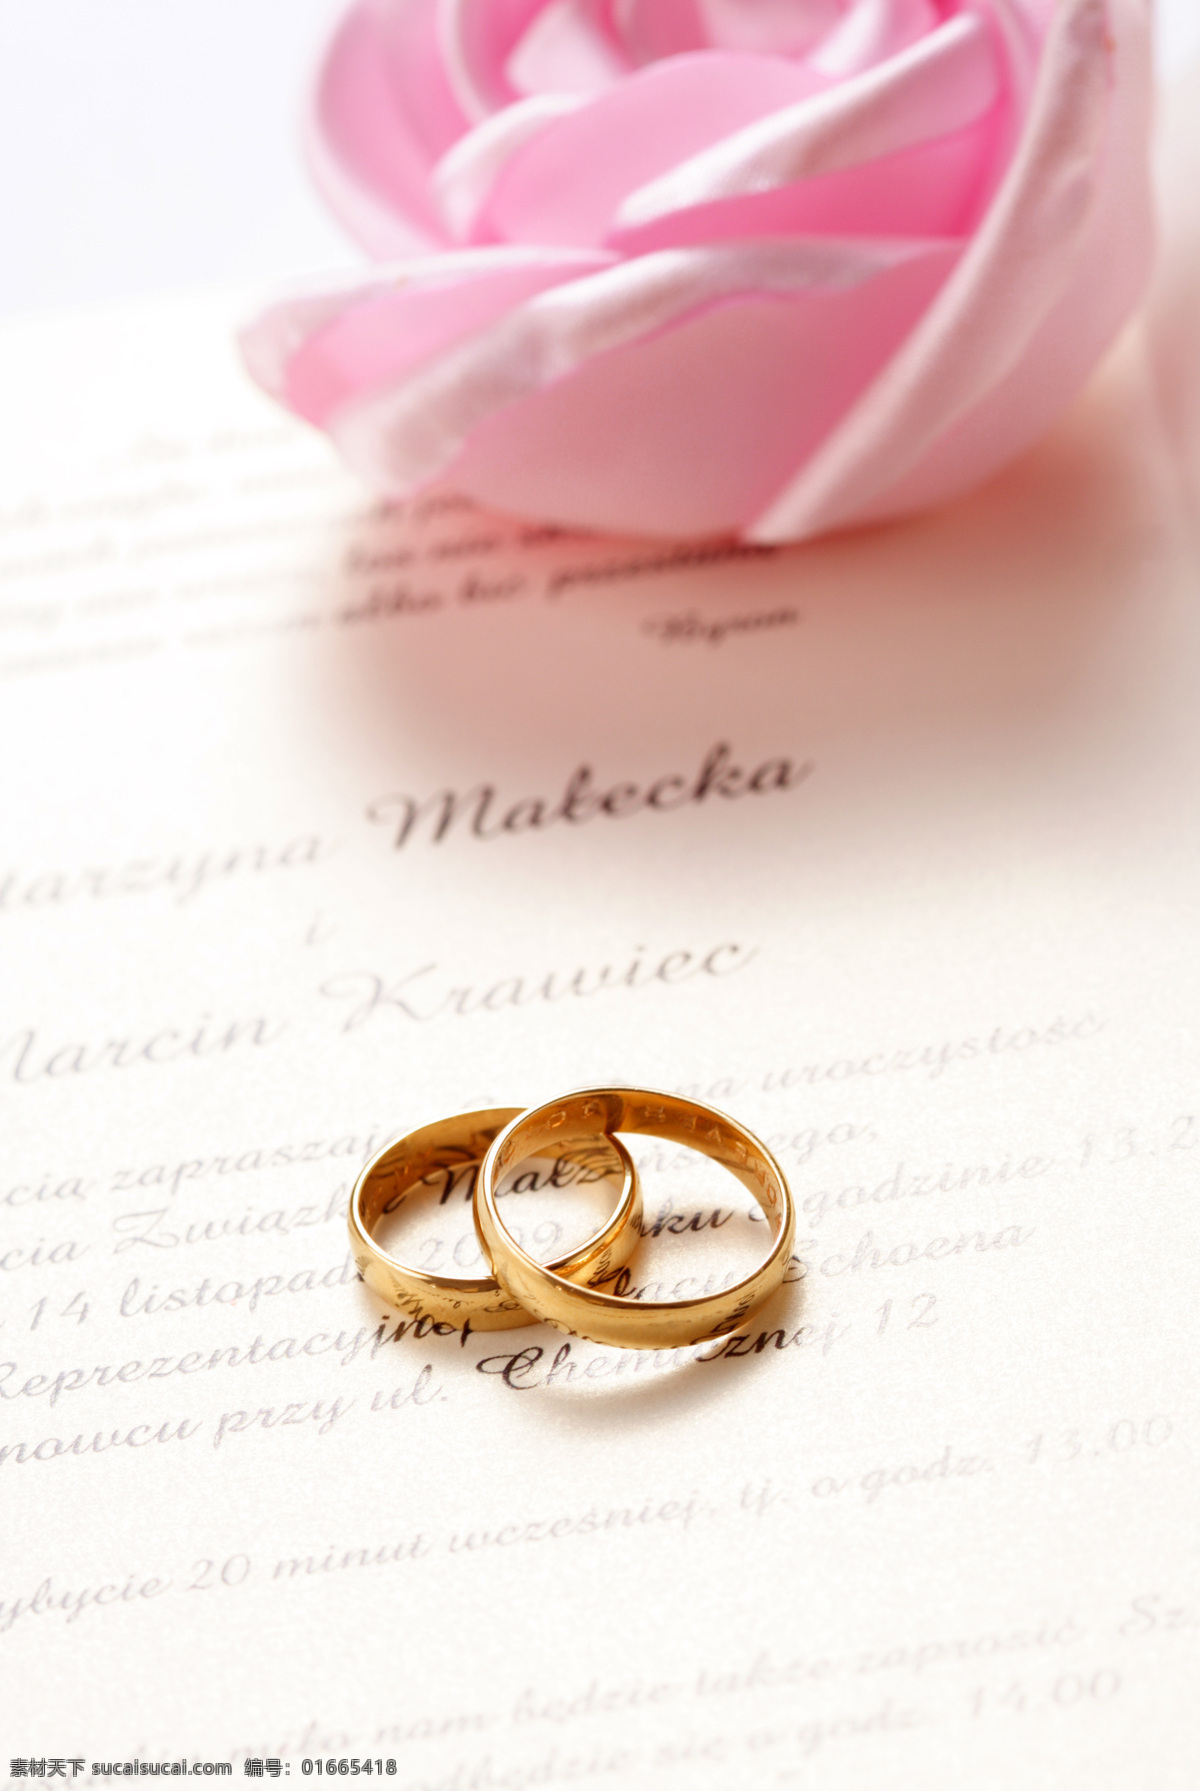 黄金 戒指 首饰 结婚戒指 金戒指 对戒 婚礼素材 婚庆素材 婚礼背景 温馨浪漫背景 其他类别 生活百科